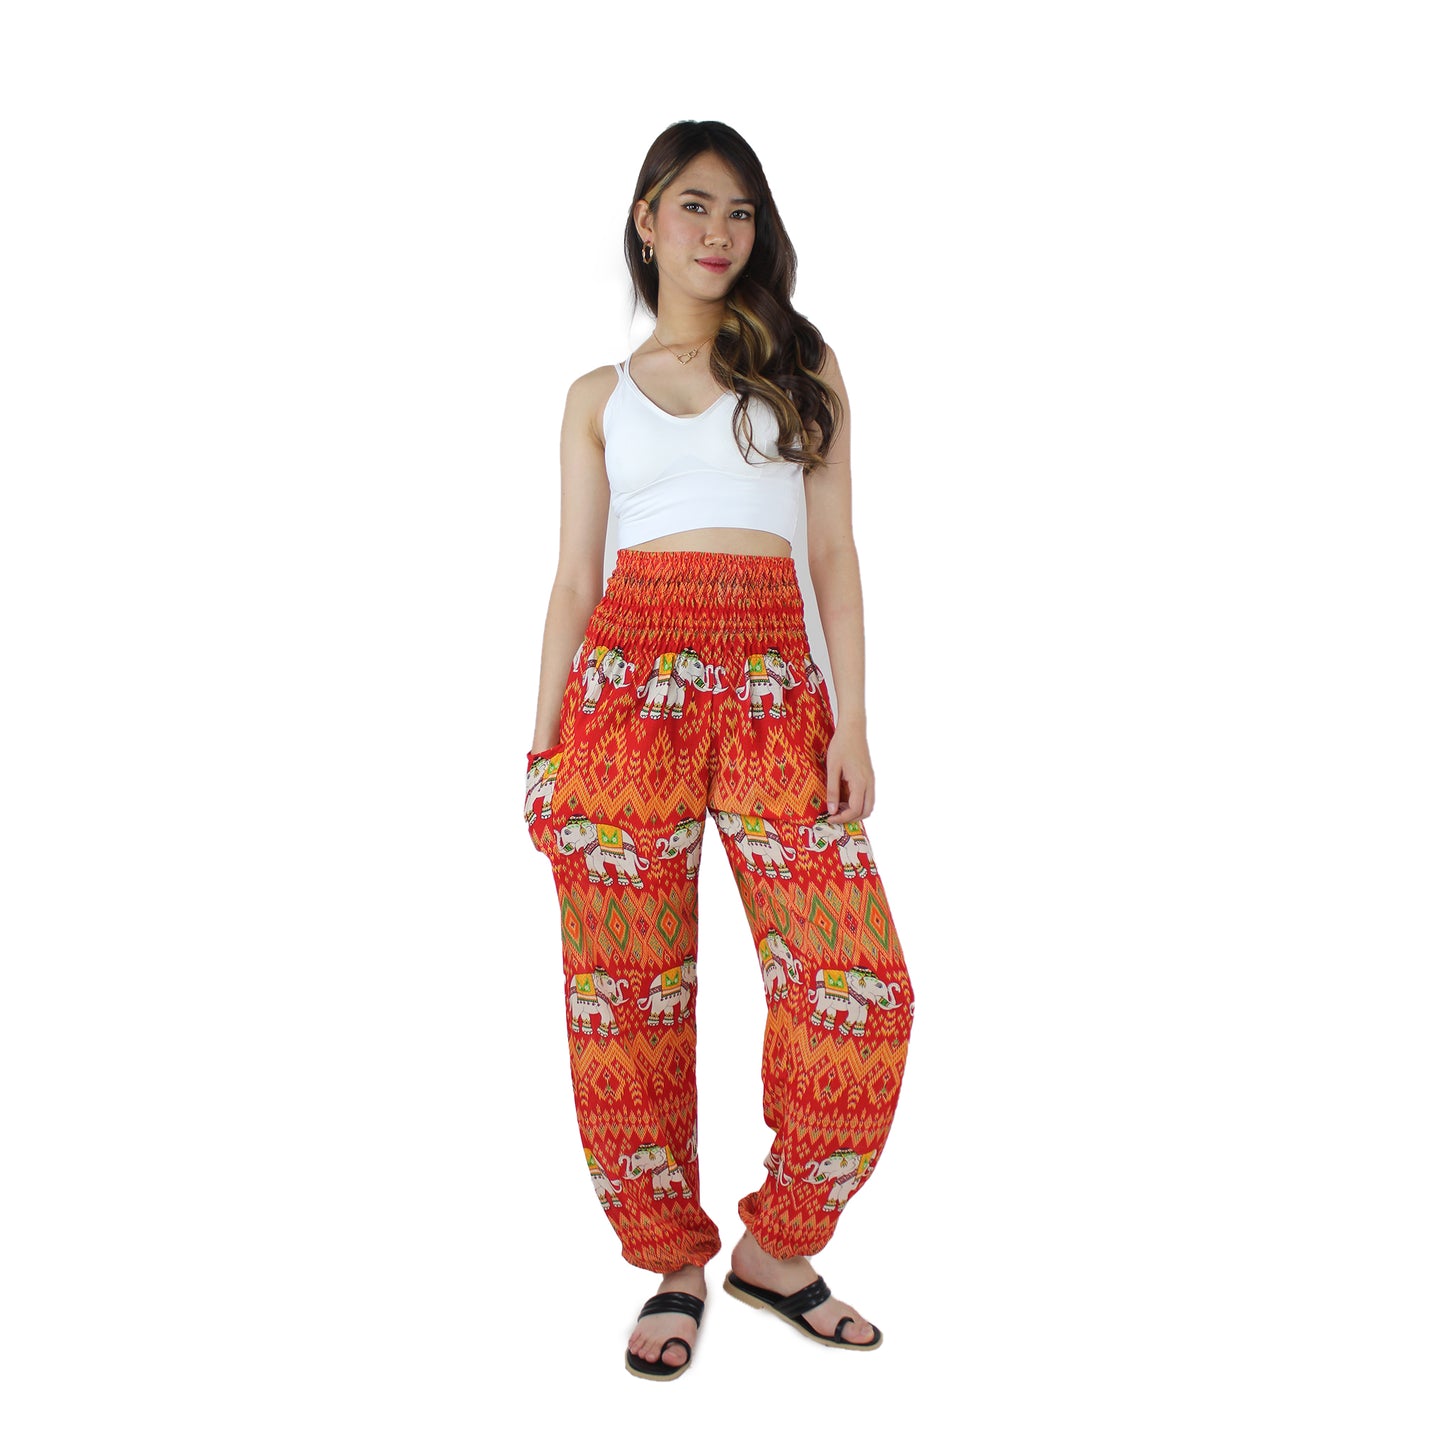 Oriental Elephant Women's Harem Pants in Red PP0004 020234 06